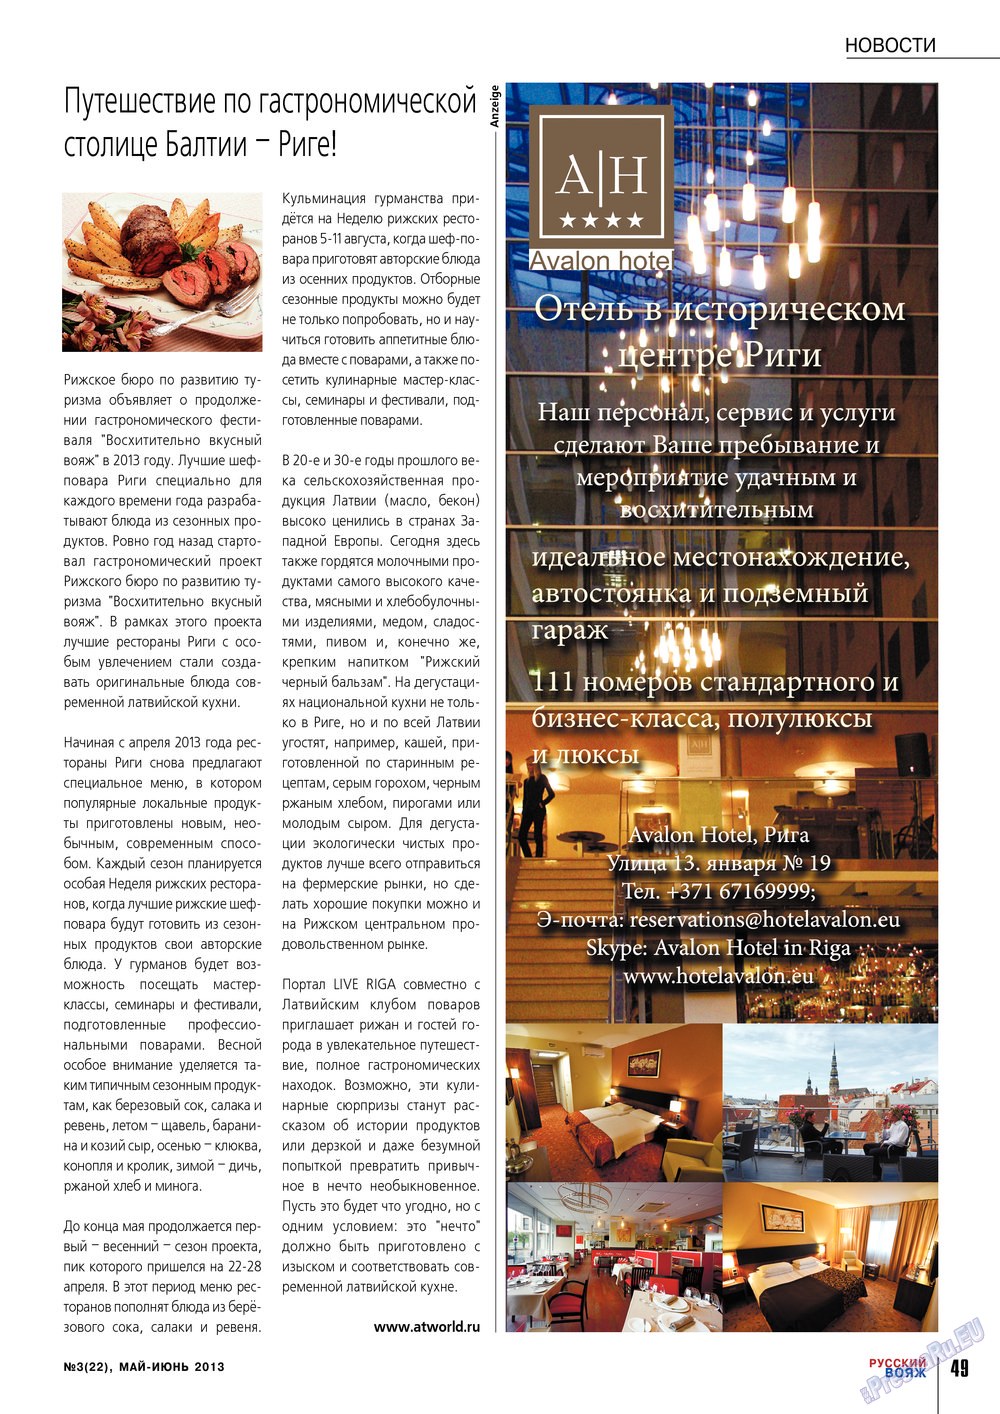 Русский вояж (журнал). 2013 год, номер 22, стр. 49